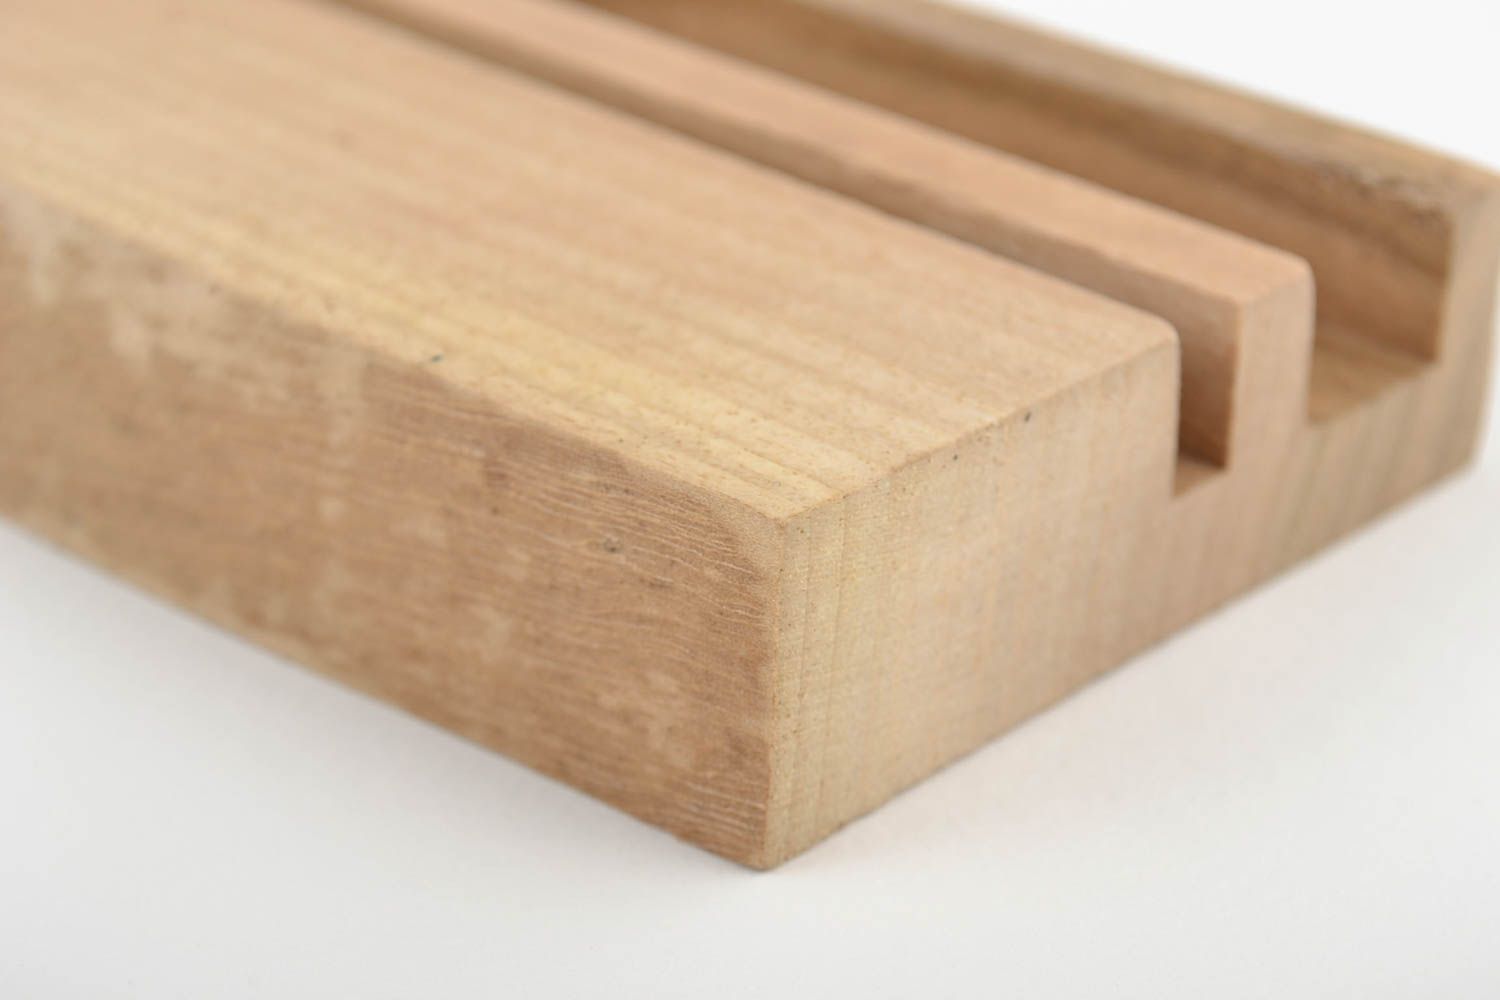 Small desktop wooden varnished tablet stand designer holder for gadgets  photo 2